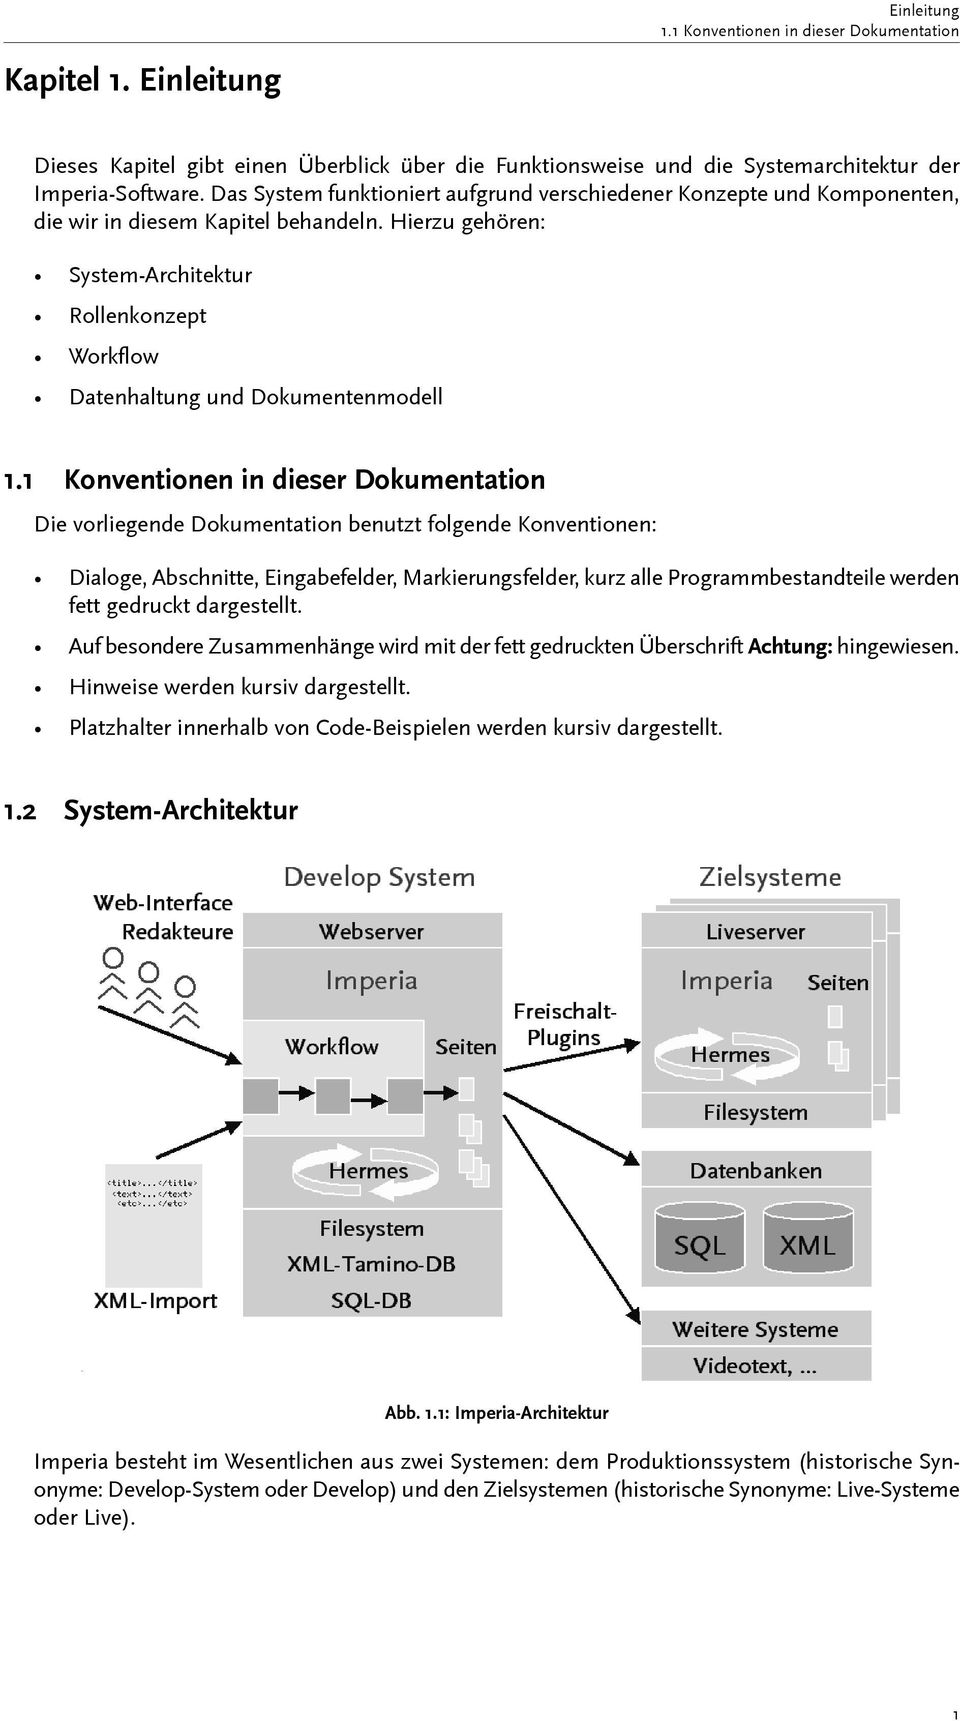 Hierzu gehören: System-Architektur Rollenkonzept Workflow Datenhaltung und Dokumentenmodell 1.